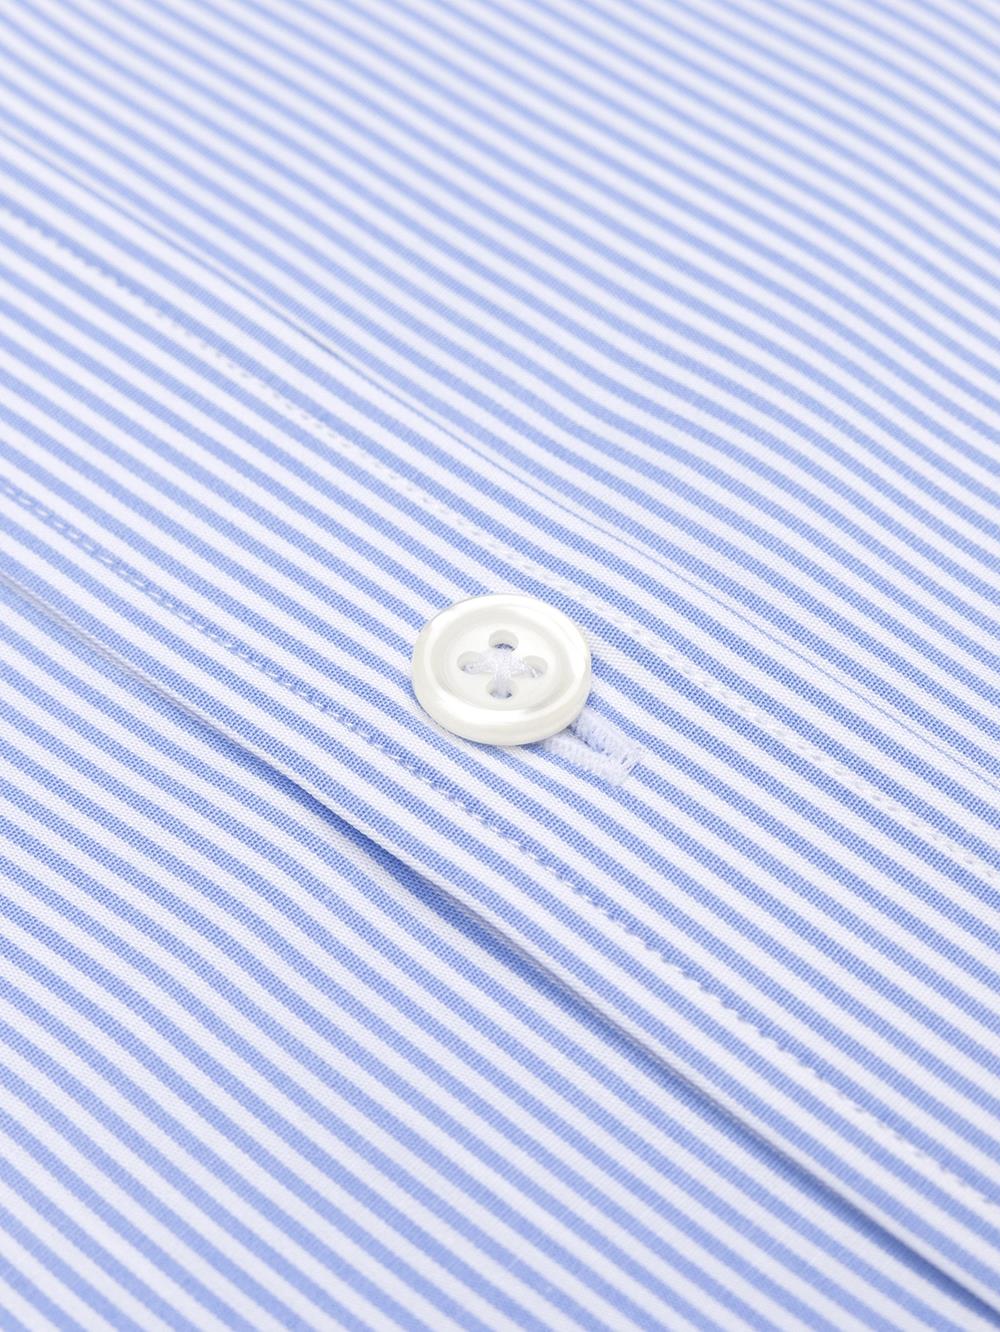 Menthon-Hemd mit himmelblauen Streifen - Buttondown Kragen